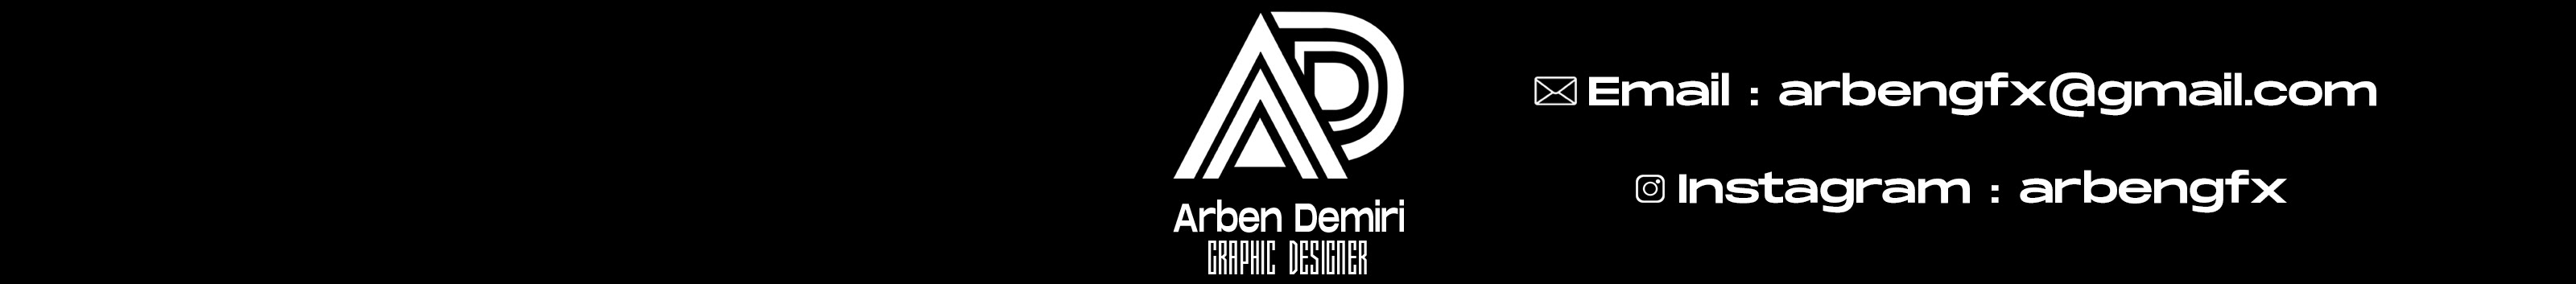 Arben Demiri's profile banner